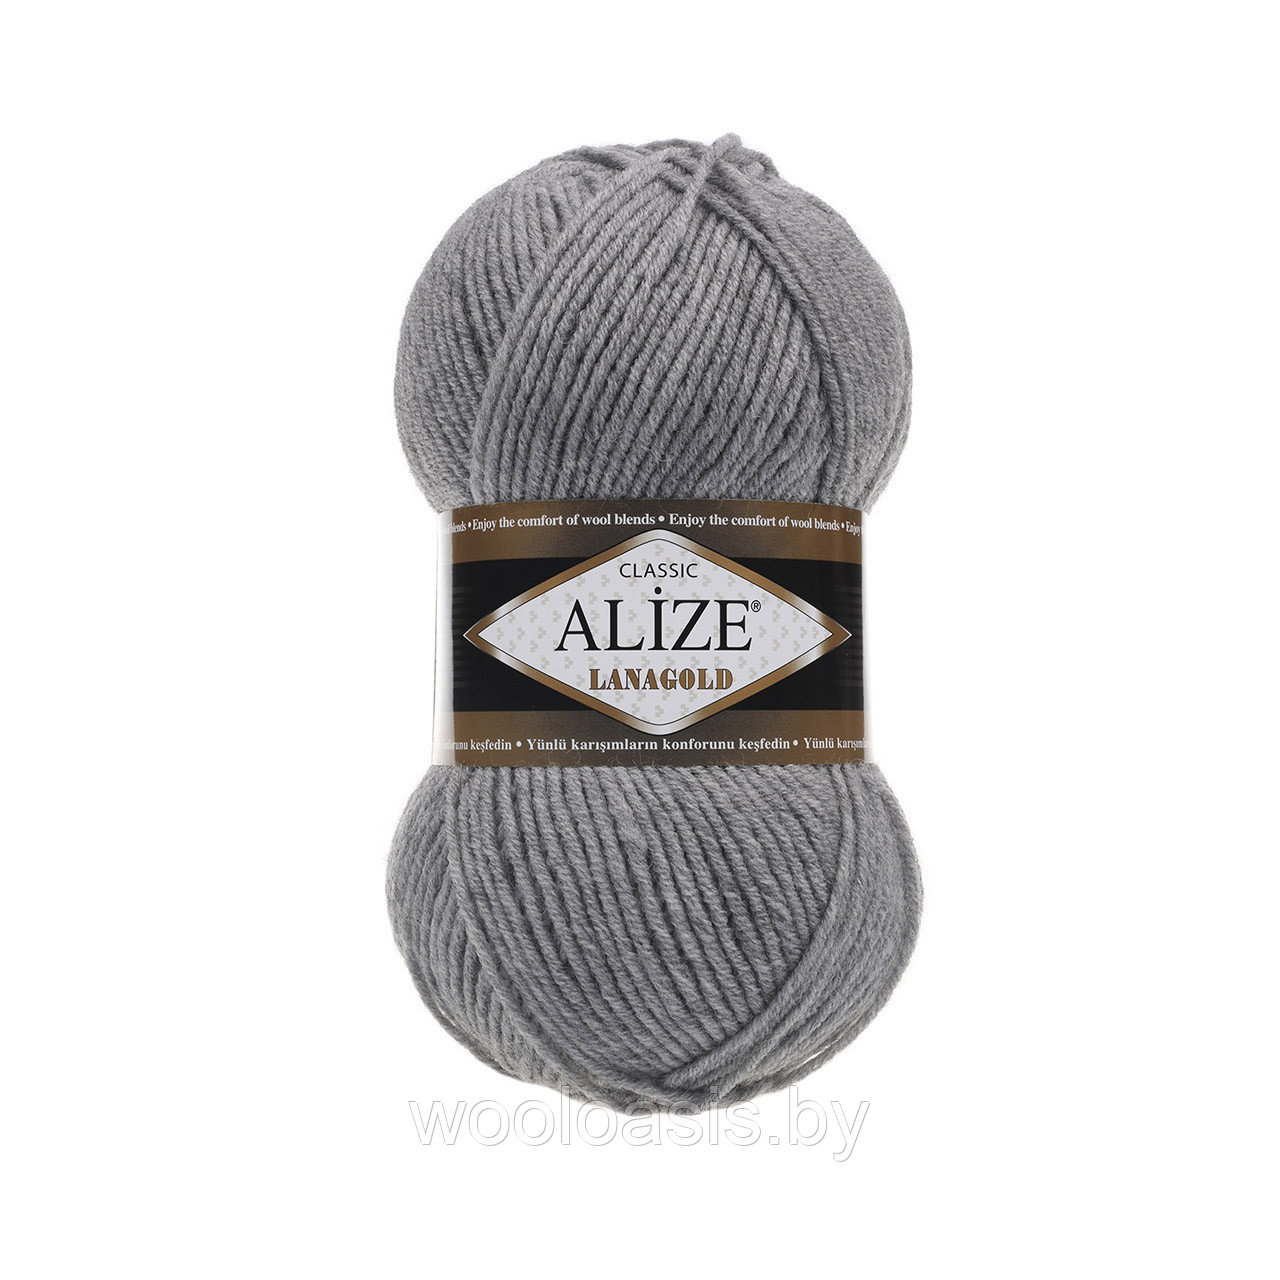 Пряжа Alize Lanagold Classic, Ализе Ланаголд Классик, турецкая, шерсть с акрилом, для ручного вязания (цвет 21)